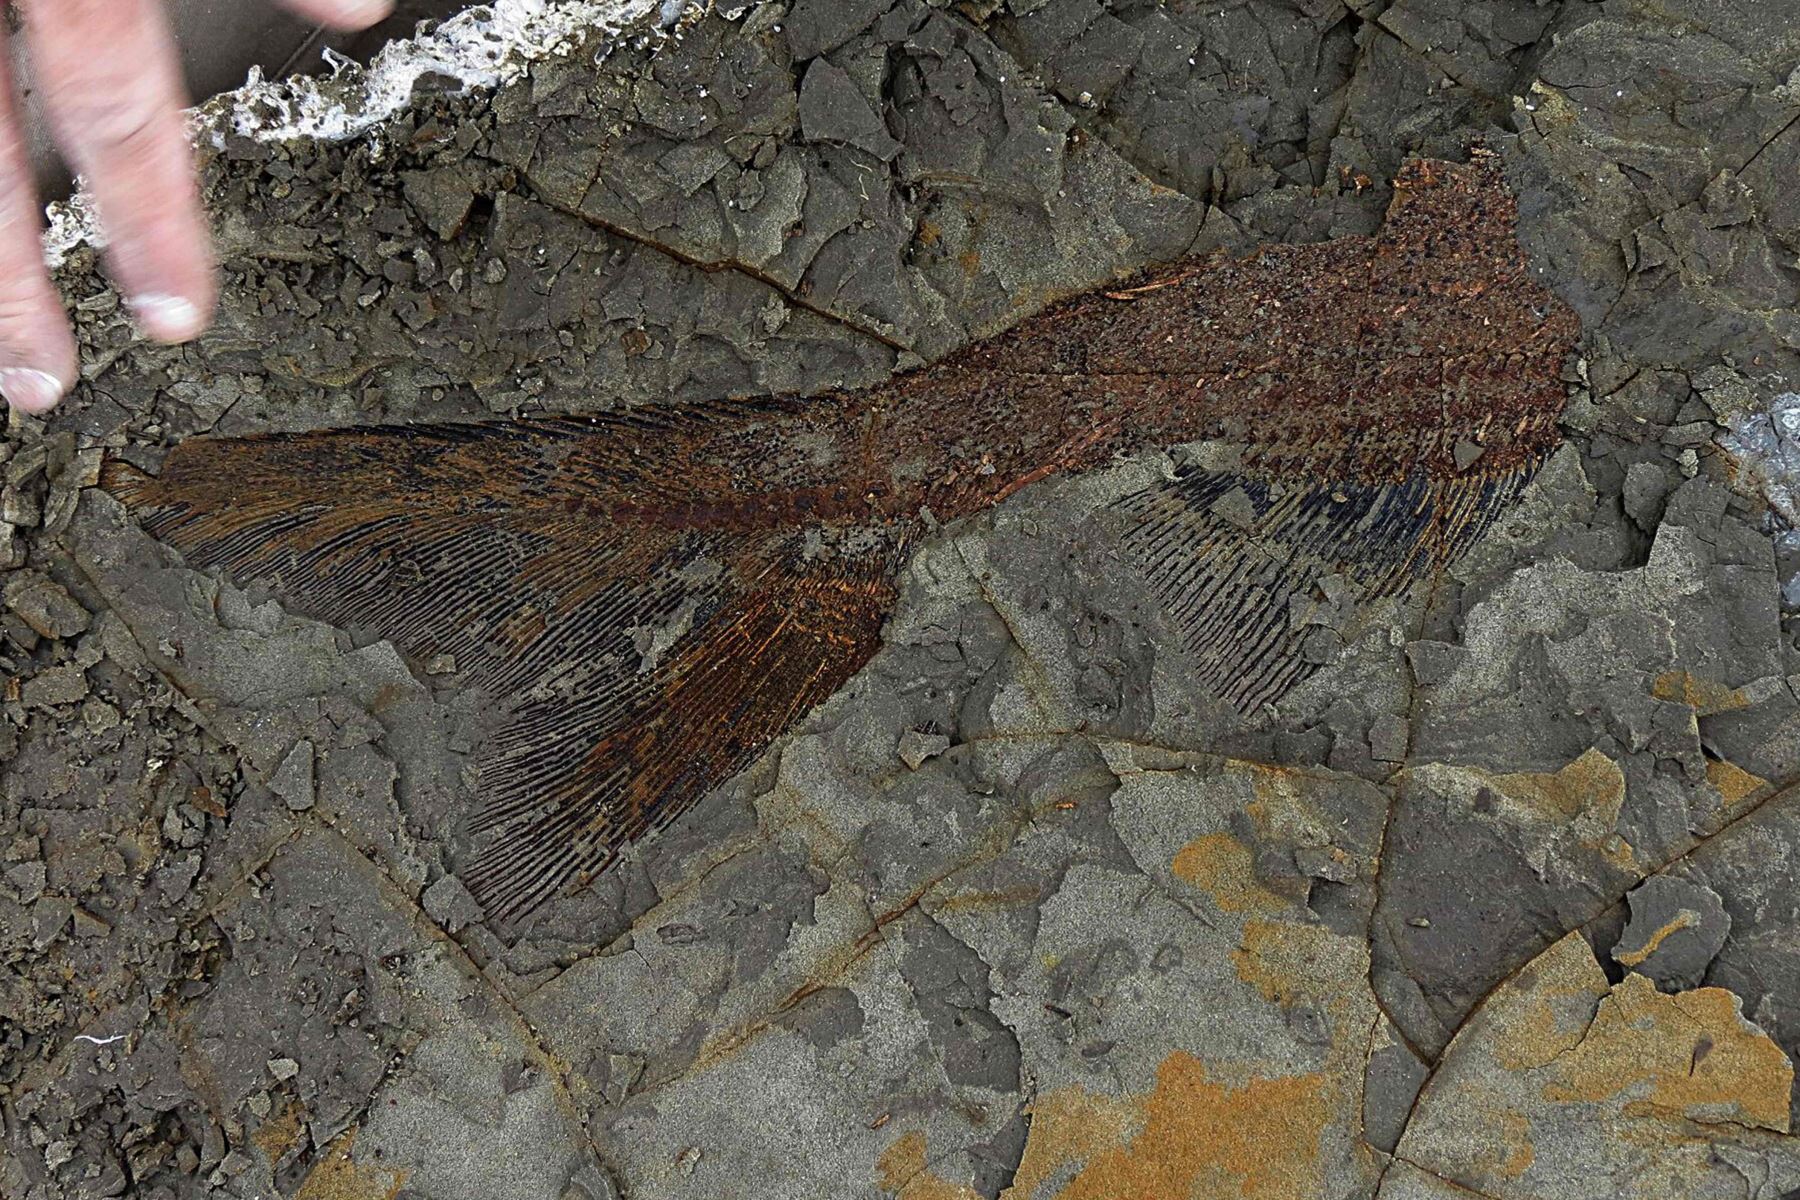 Foto del 30 de marzo de 2019, cortesía de la Universidad de Kansas, muestra un fósil de peces de 66 millones de años, descubierto por Robert DePalma y sus colegas. Foto: AFP